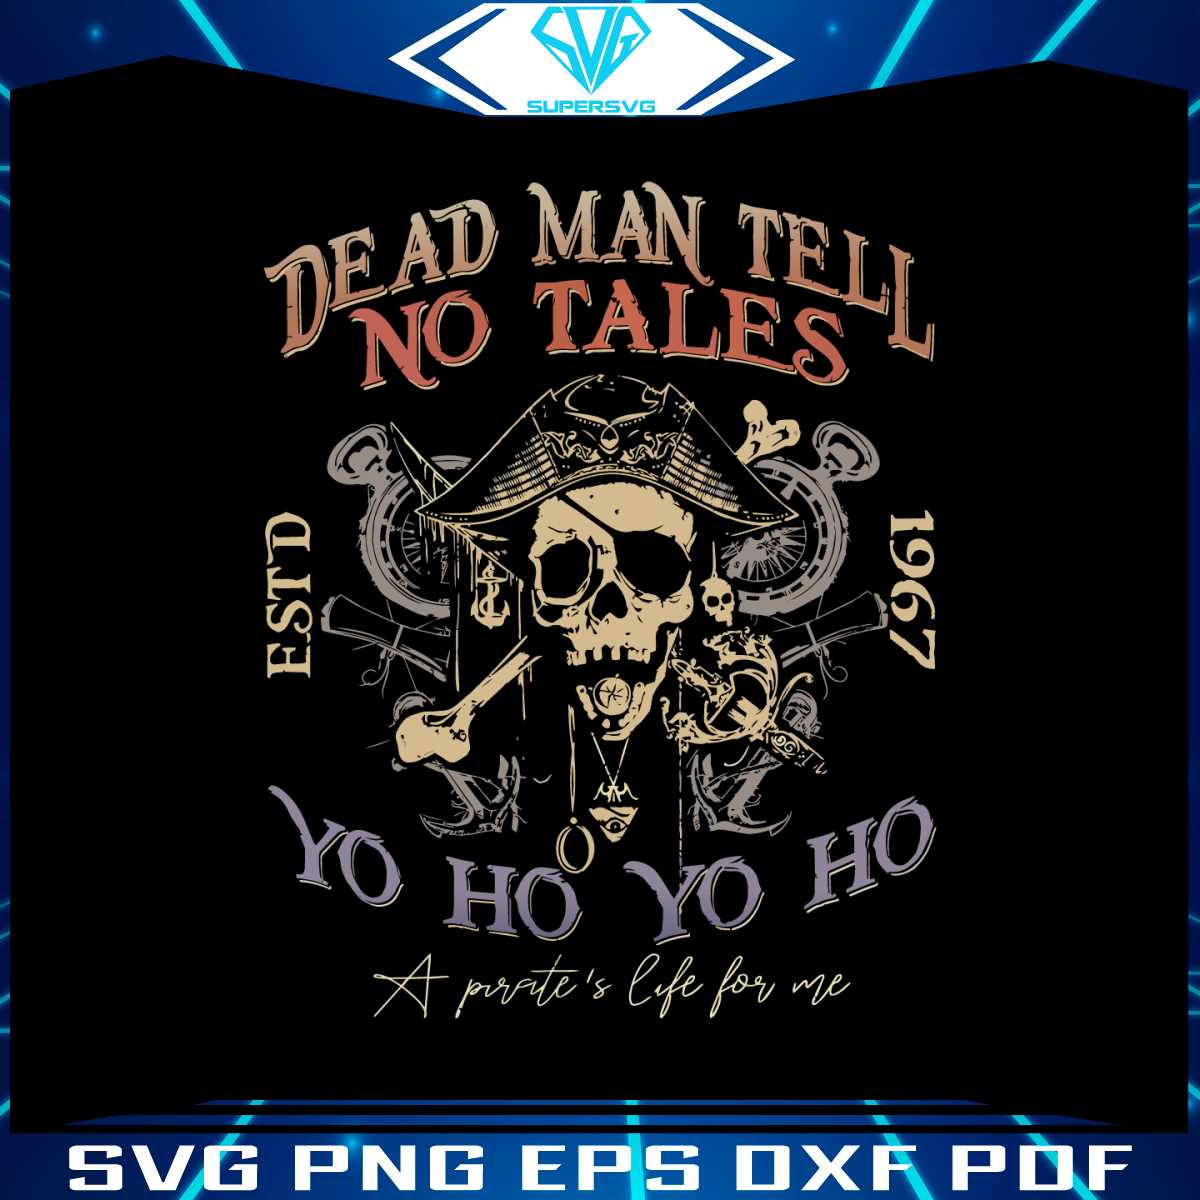 disney-pirates-dead-men-tell-no-tales-est-1967-svg-download